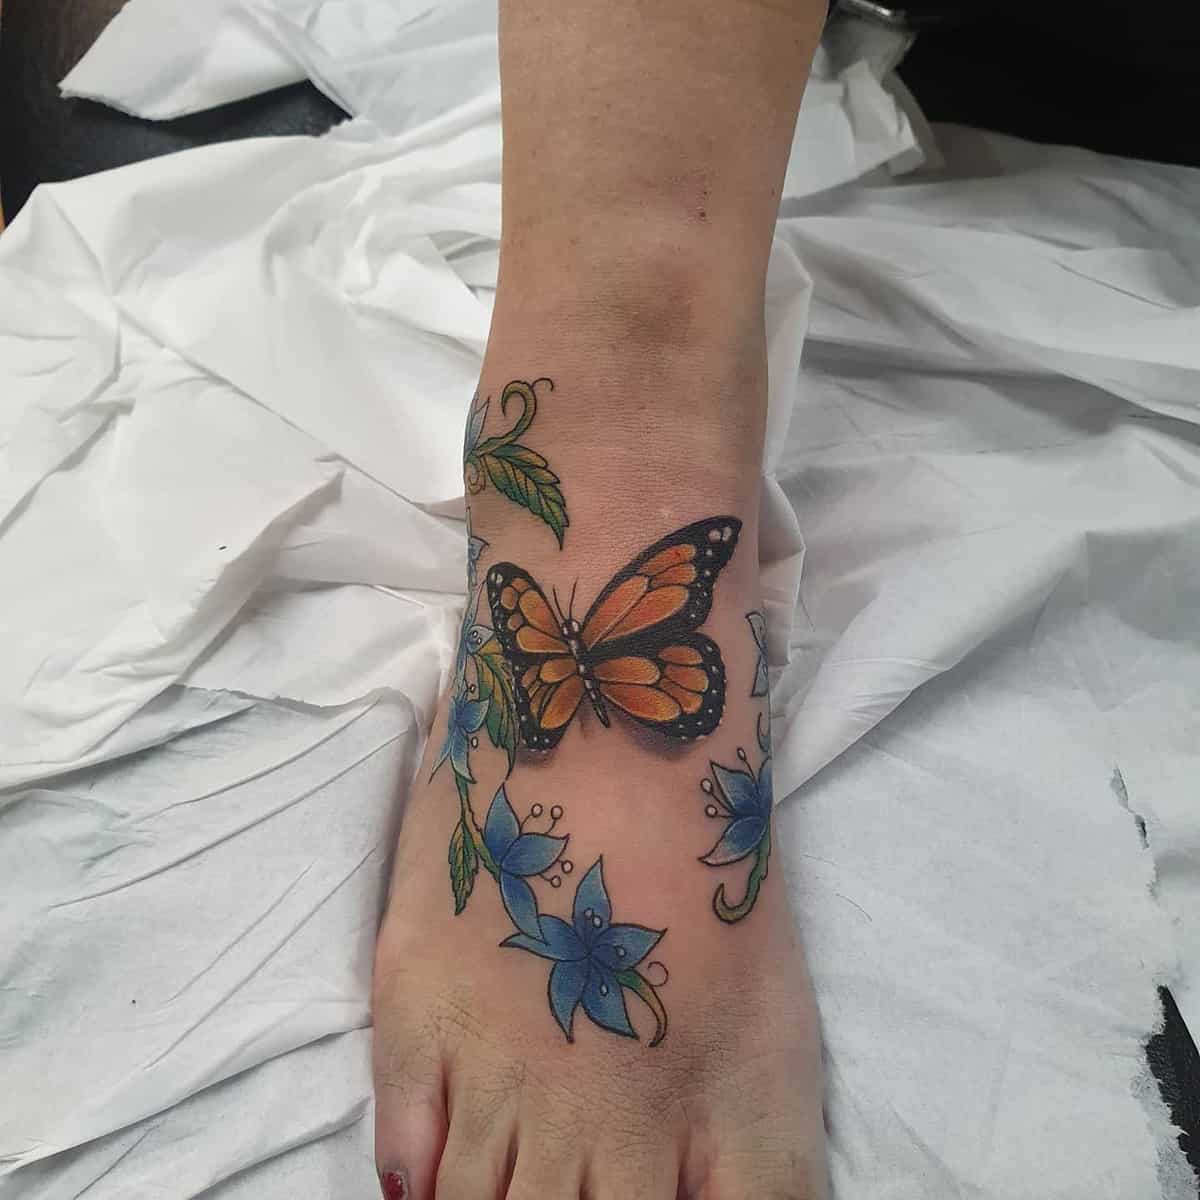 Foot Butterfly Tattoos harrybullard